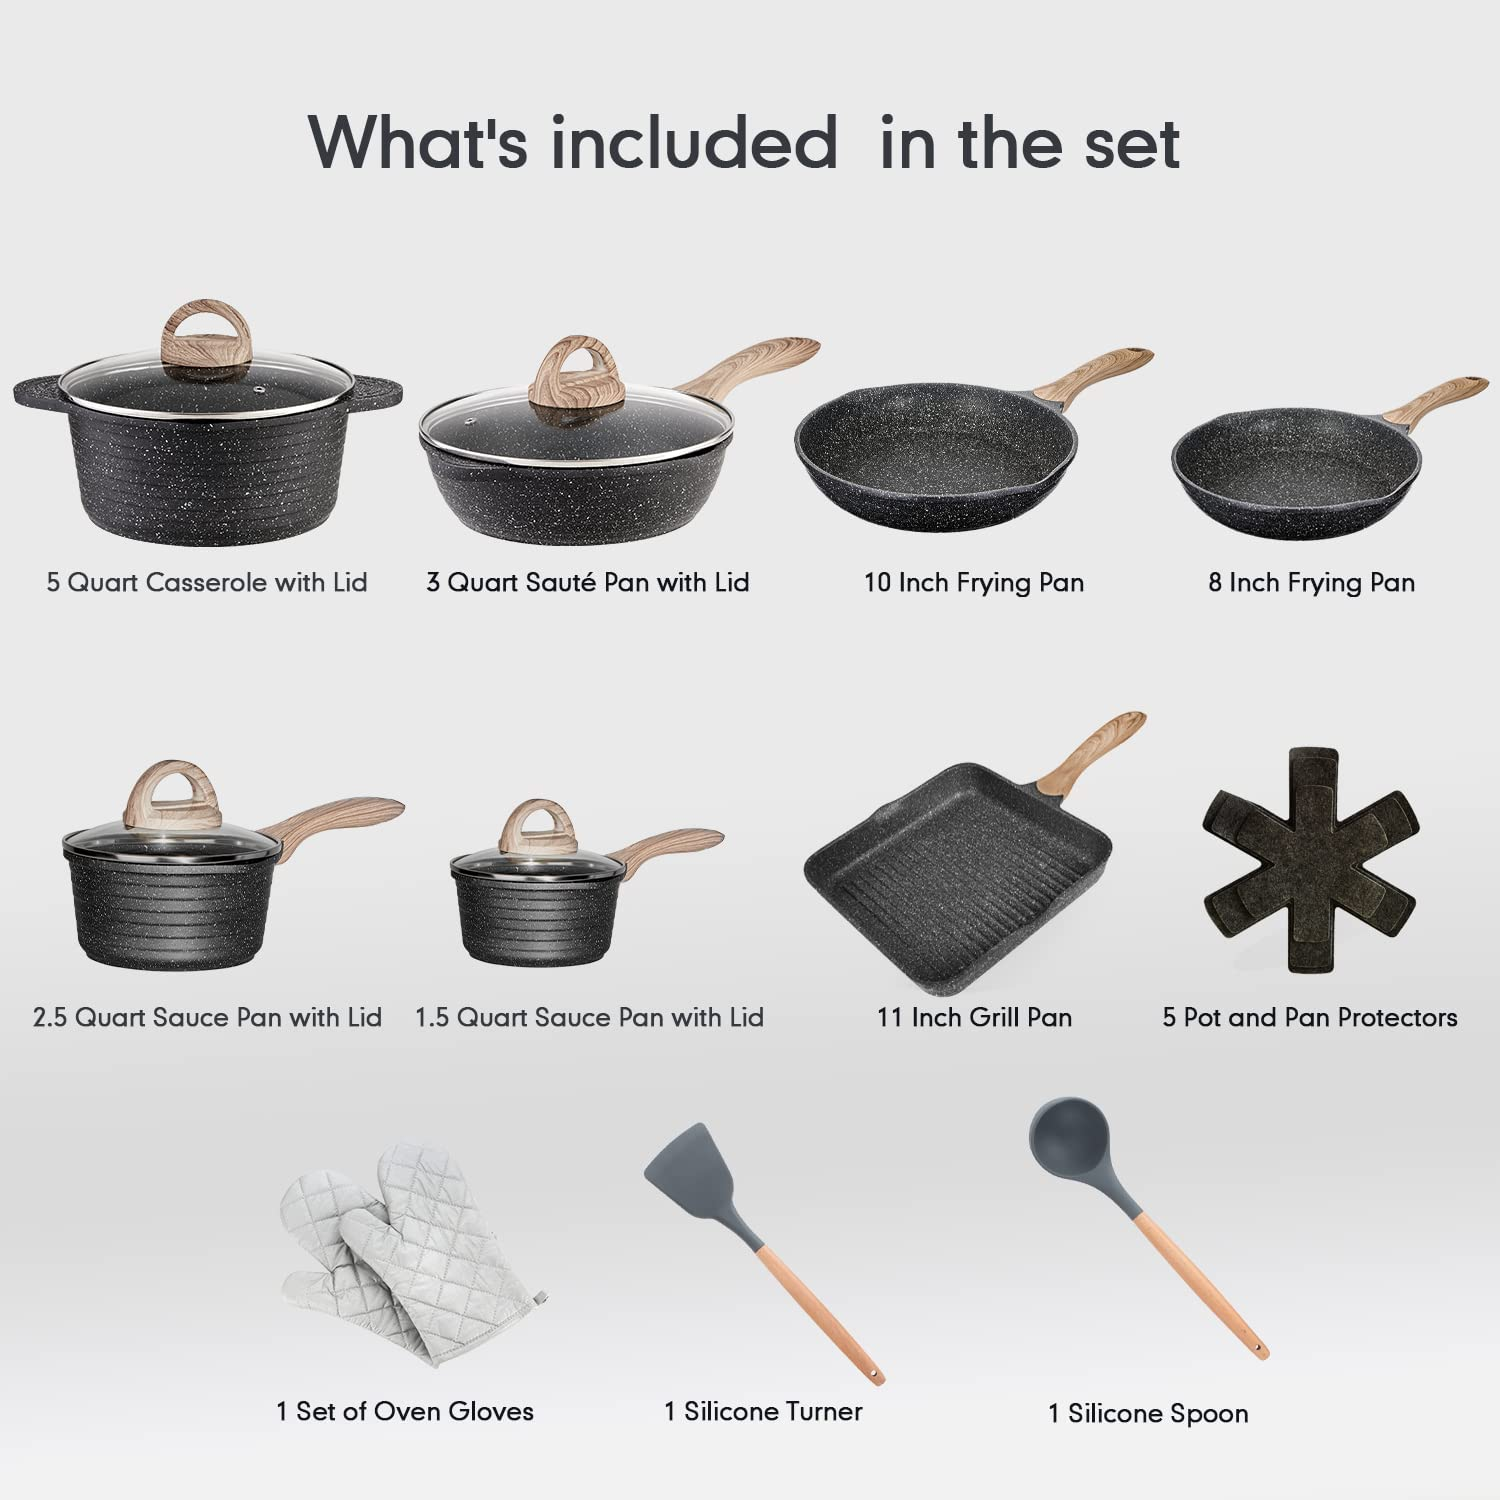 Juego de utensilios de cocina – Juego de ollas y sartenes antiadherentes  grandes con tapas, juego de utensilios de cocina de granito antiadherente